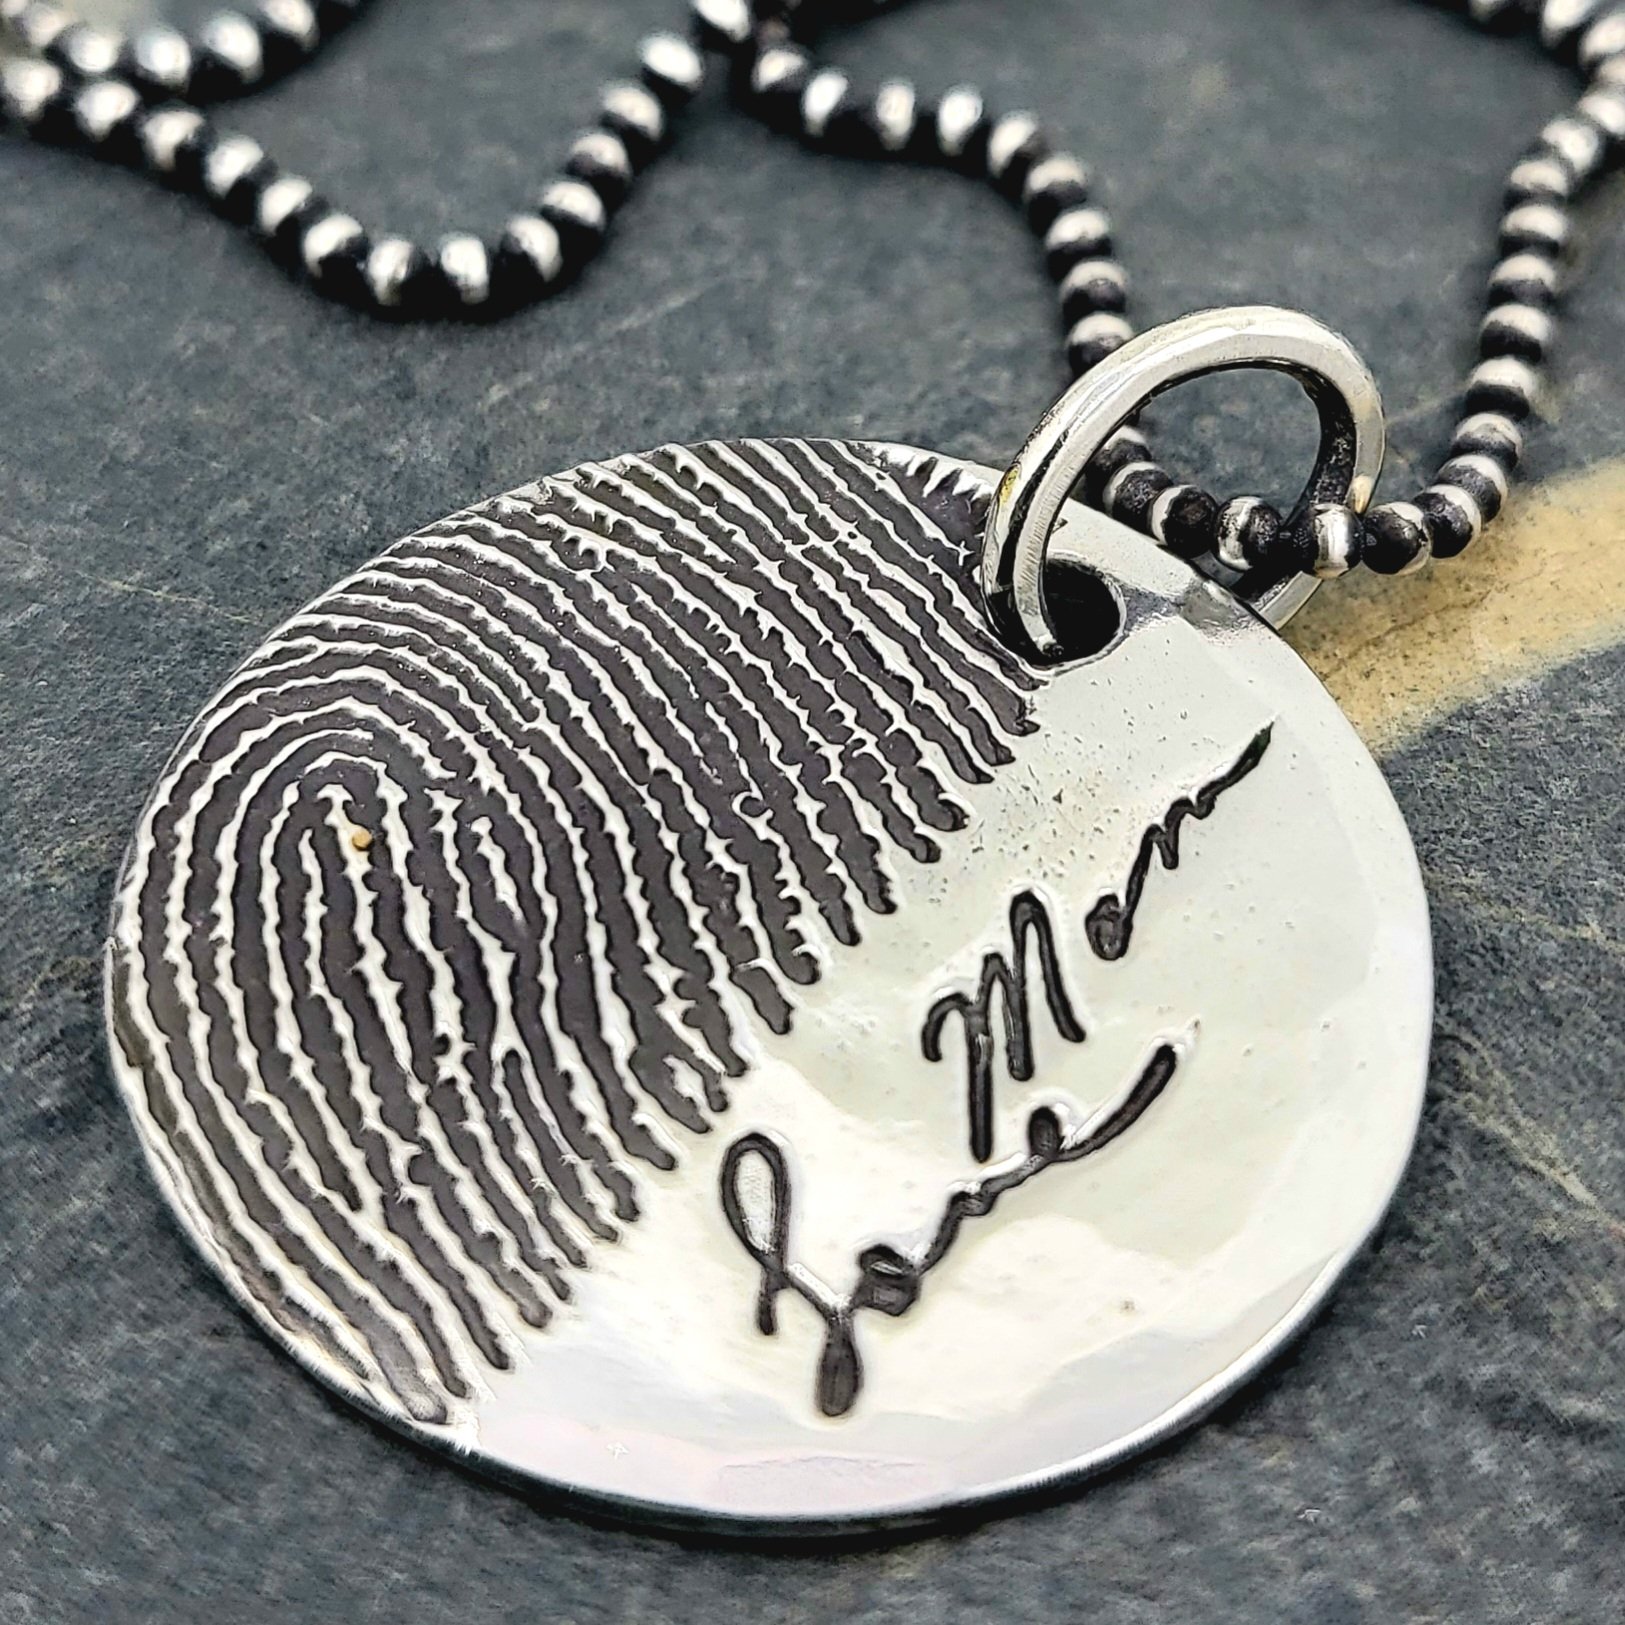 Custom engraving a fingerprint on a photo engraved pendant